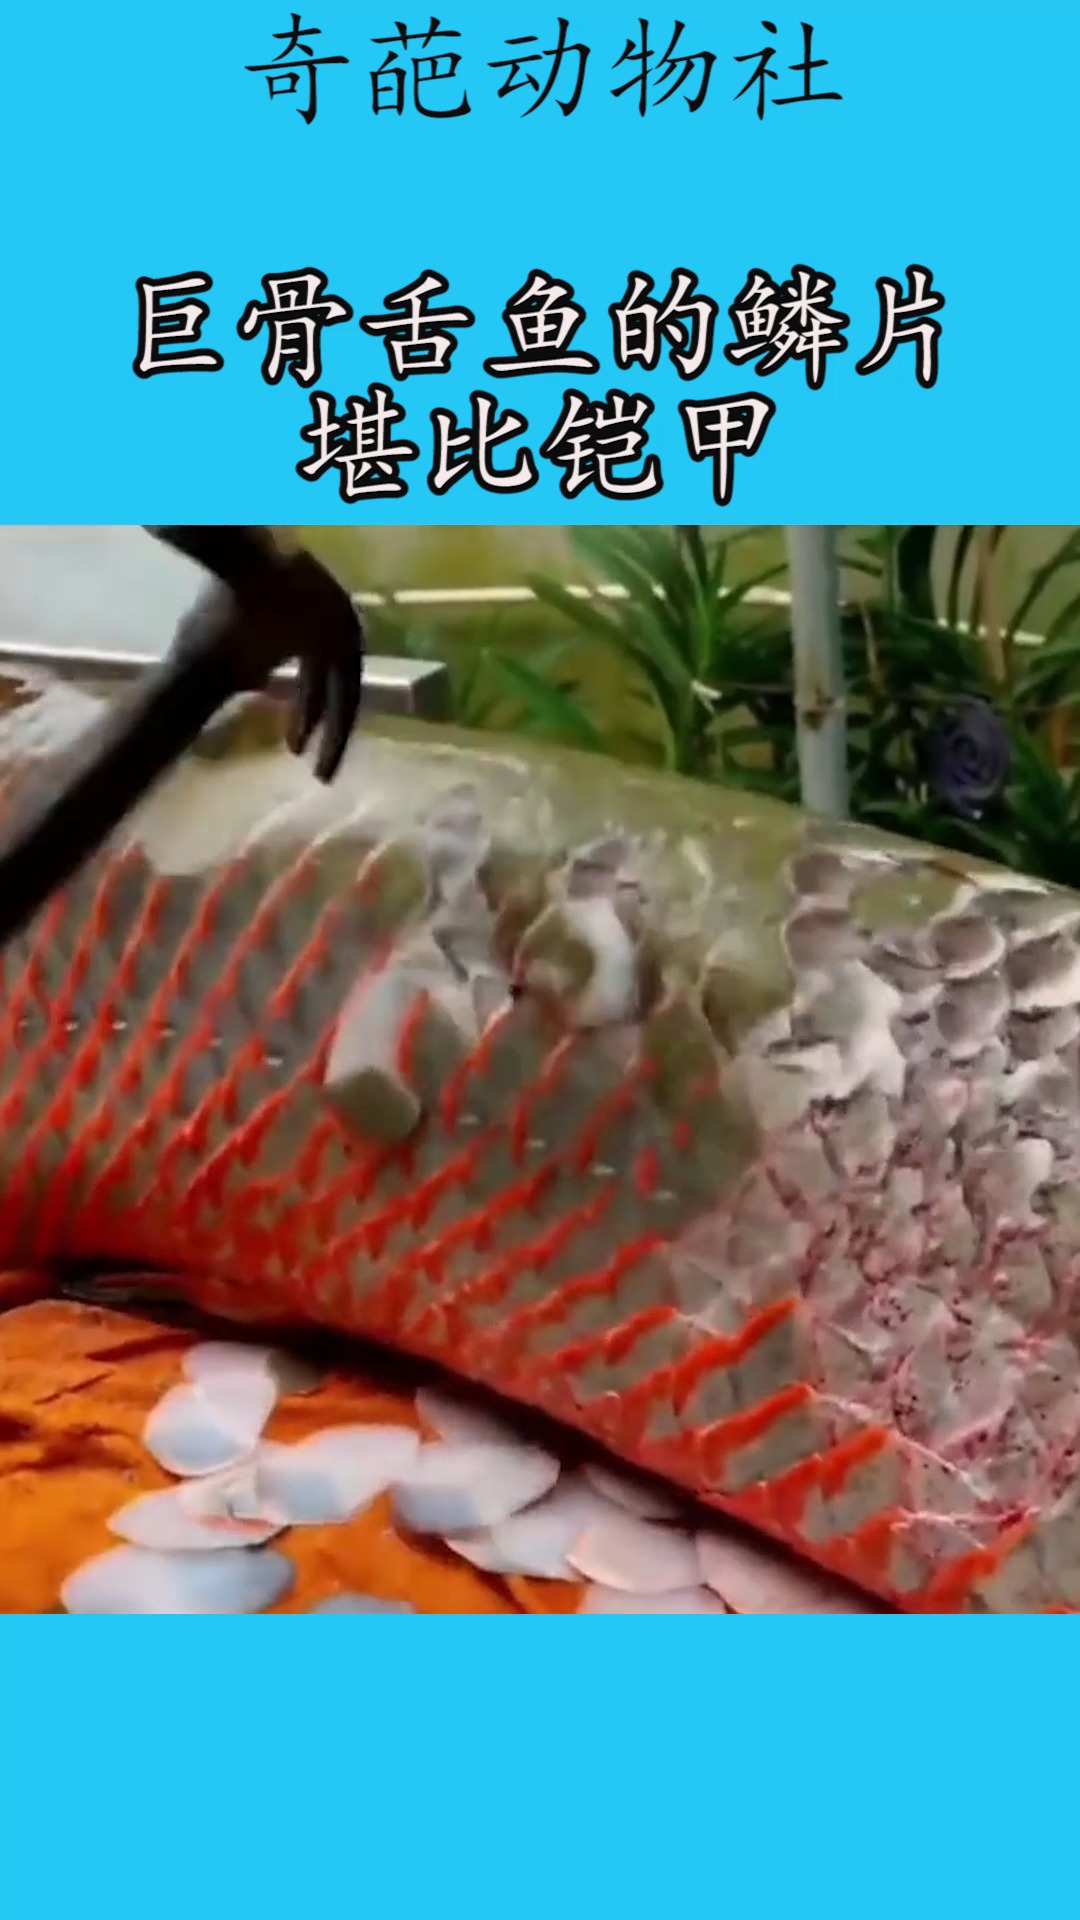 巨骨舌鱼的天敌图片